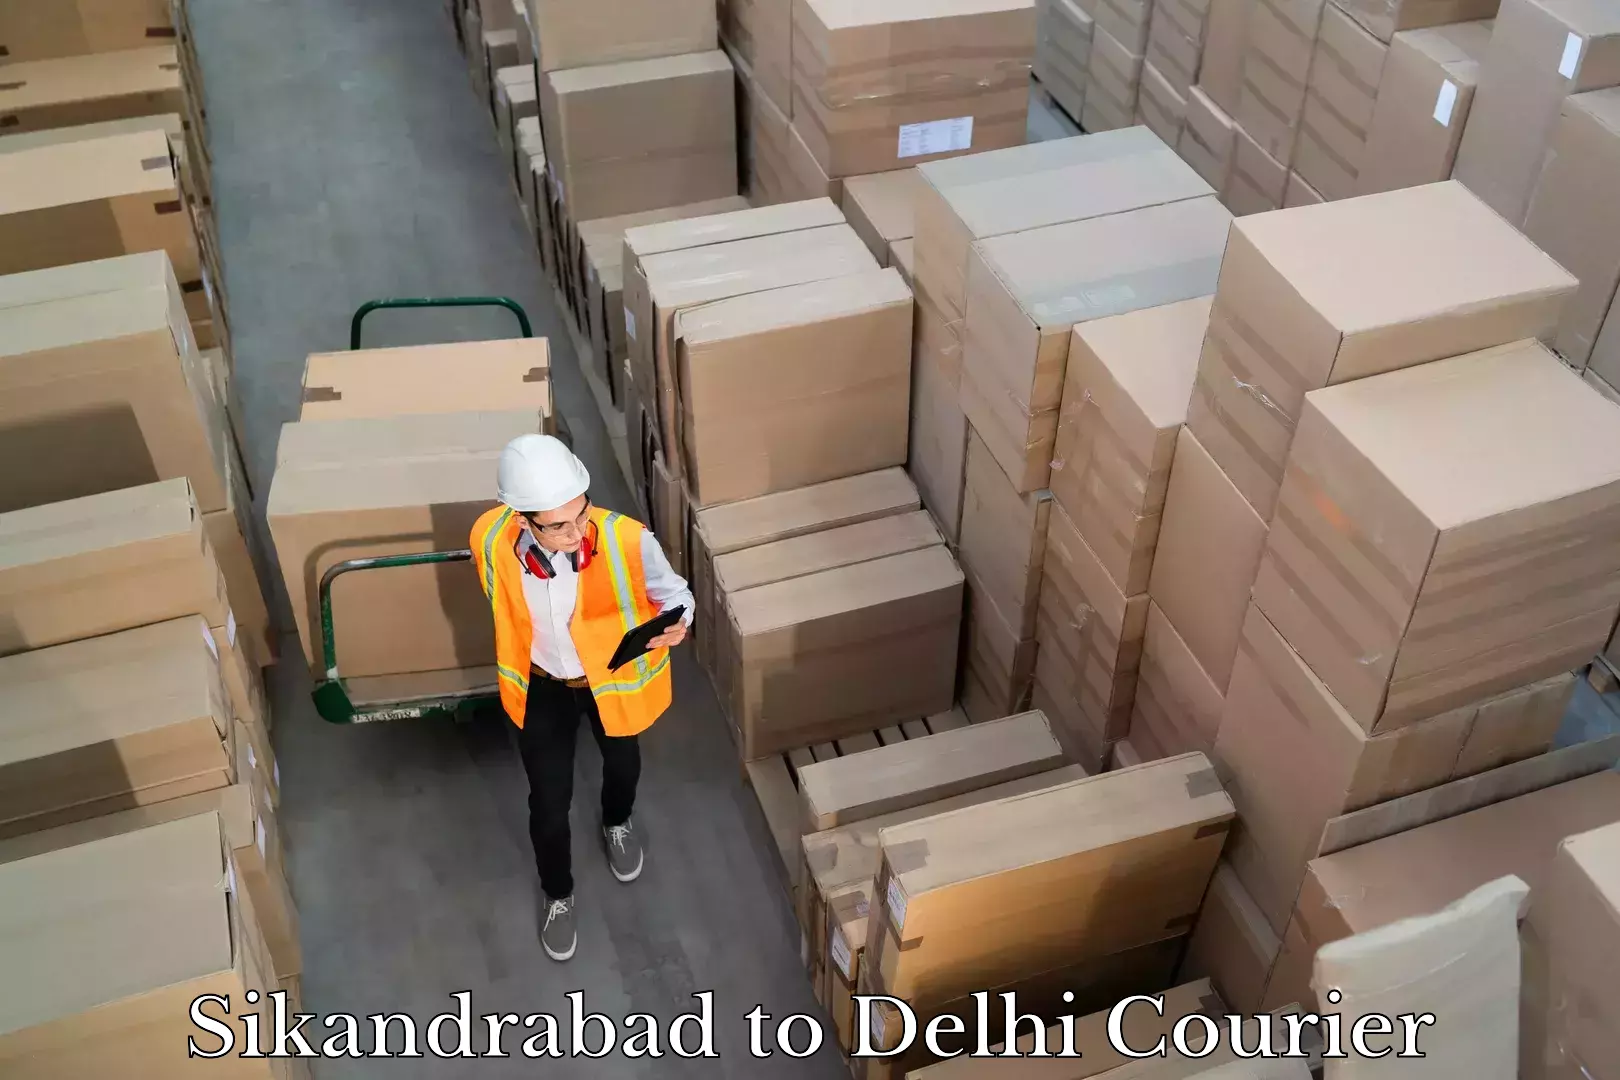 Logistics management Sikandrabad to Delhi